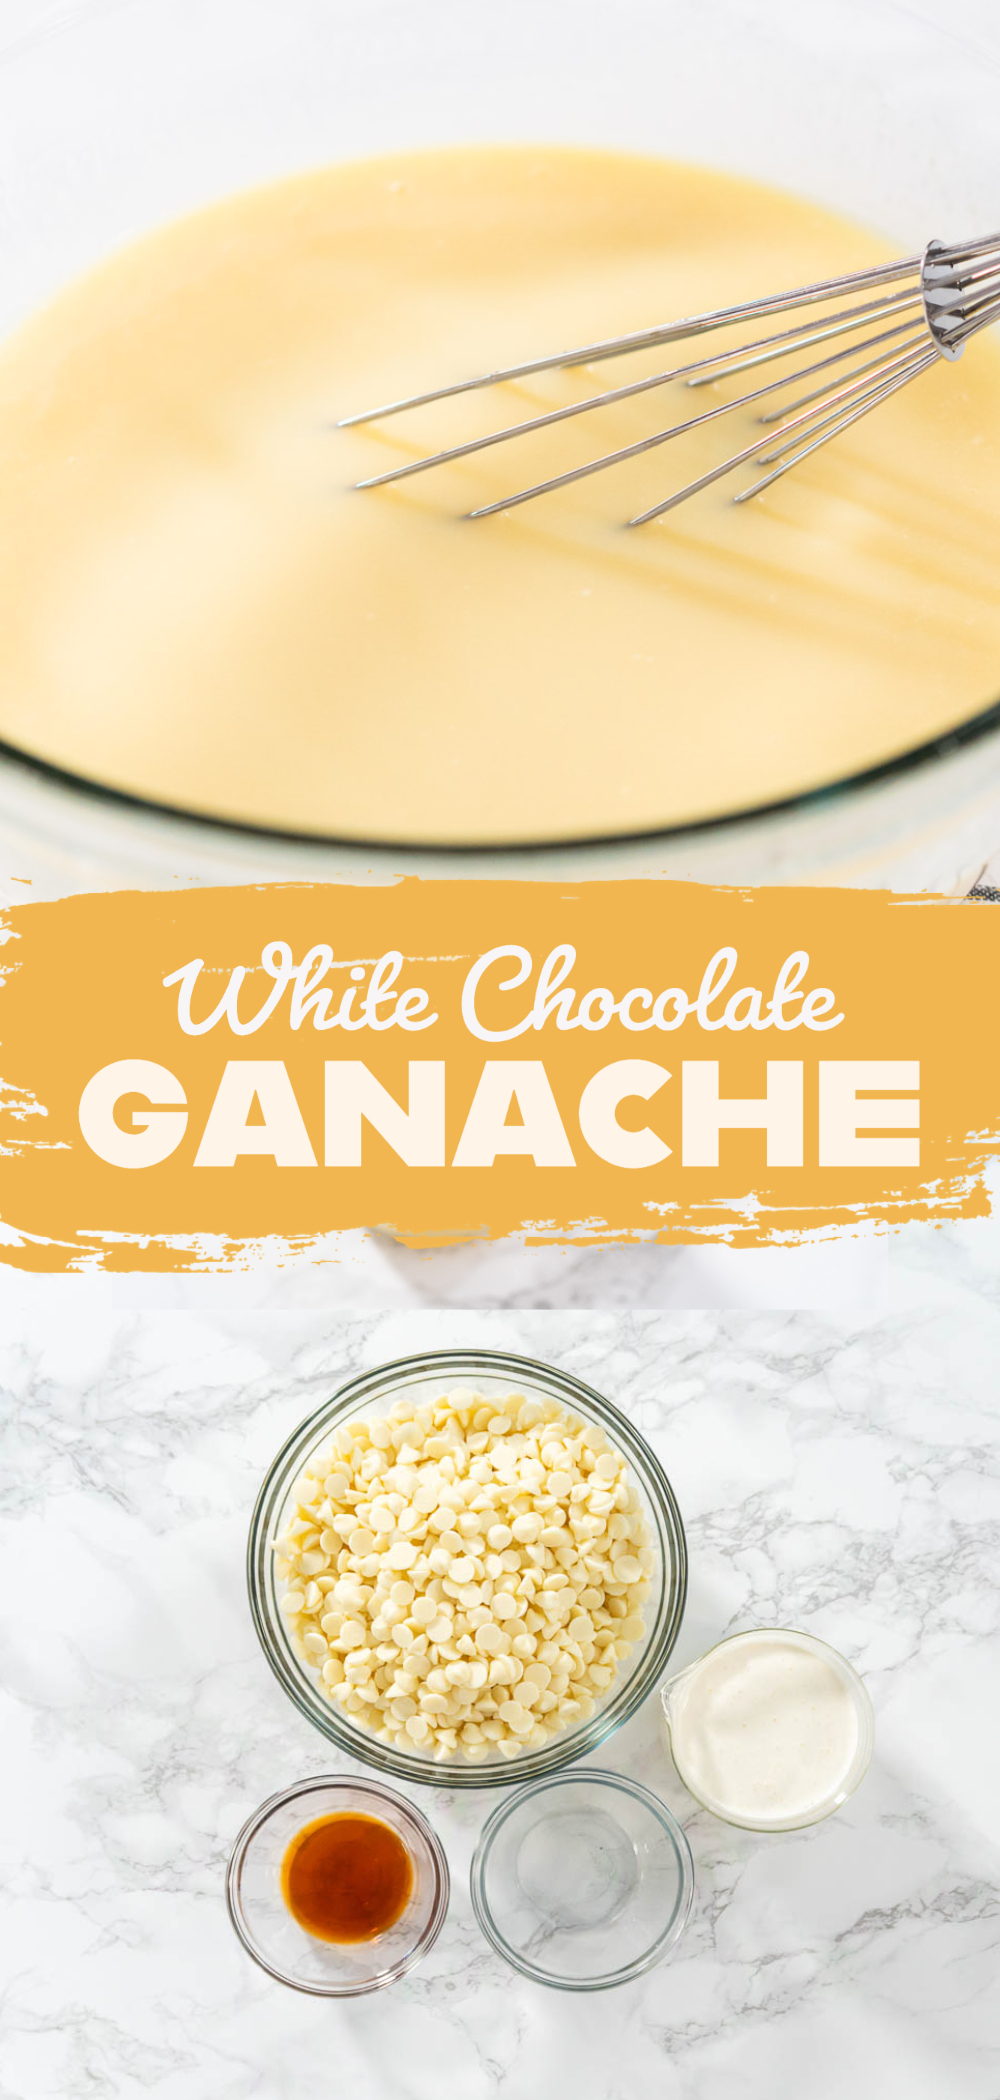 White Chocolate Ganache